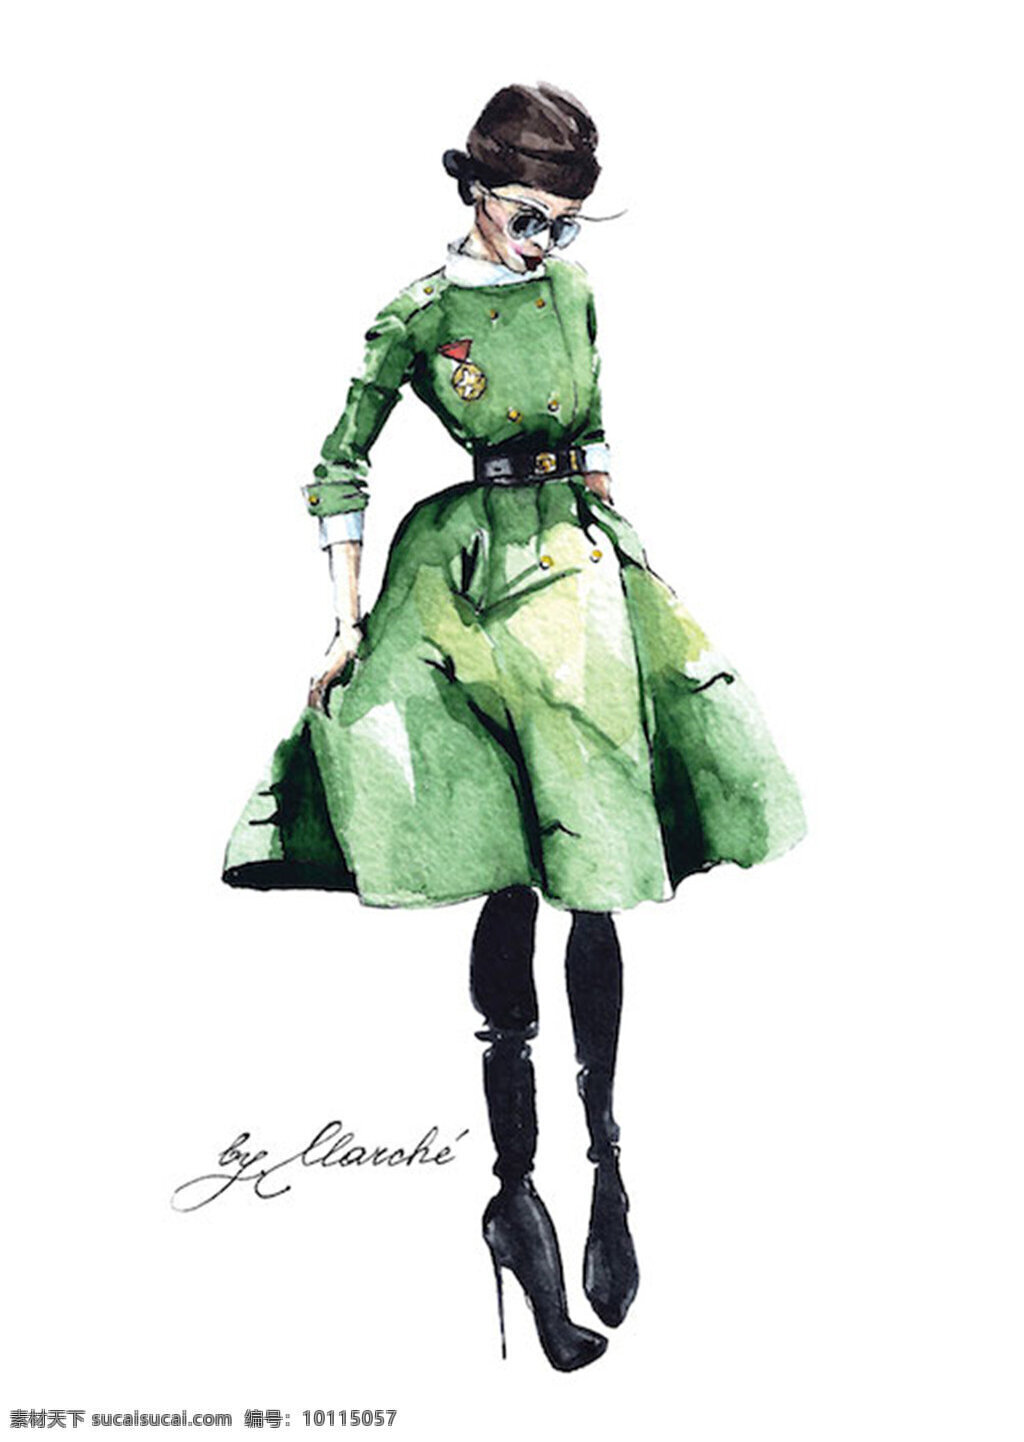 绿色 连衣裙 设计图 服装设计 时尚女装 职业女装 职业装 女装设计 效果图 短裙 衬衫 服装 服装效果图